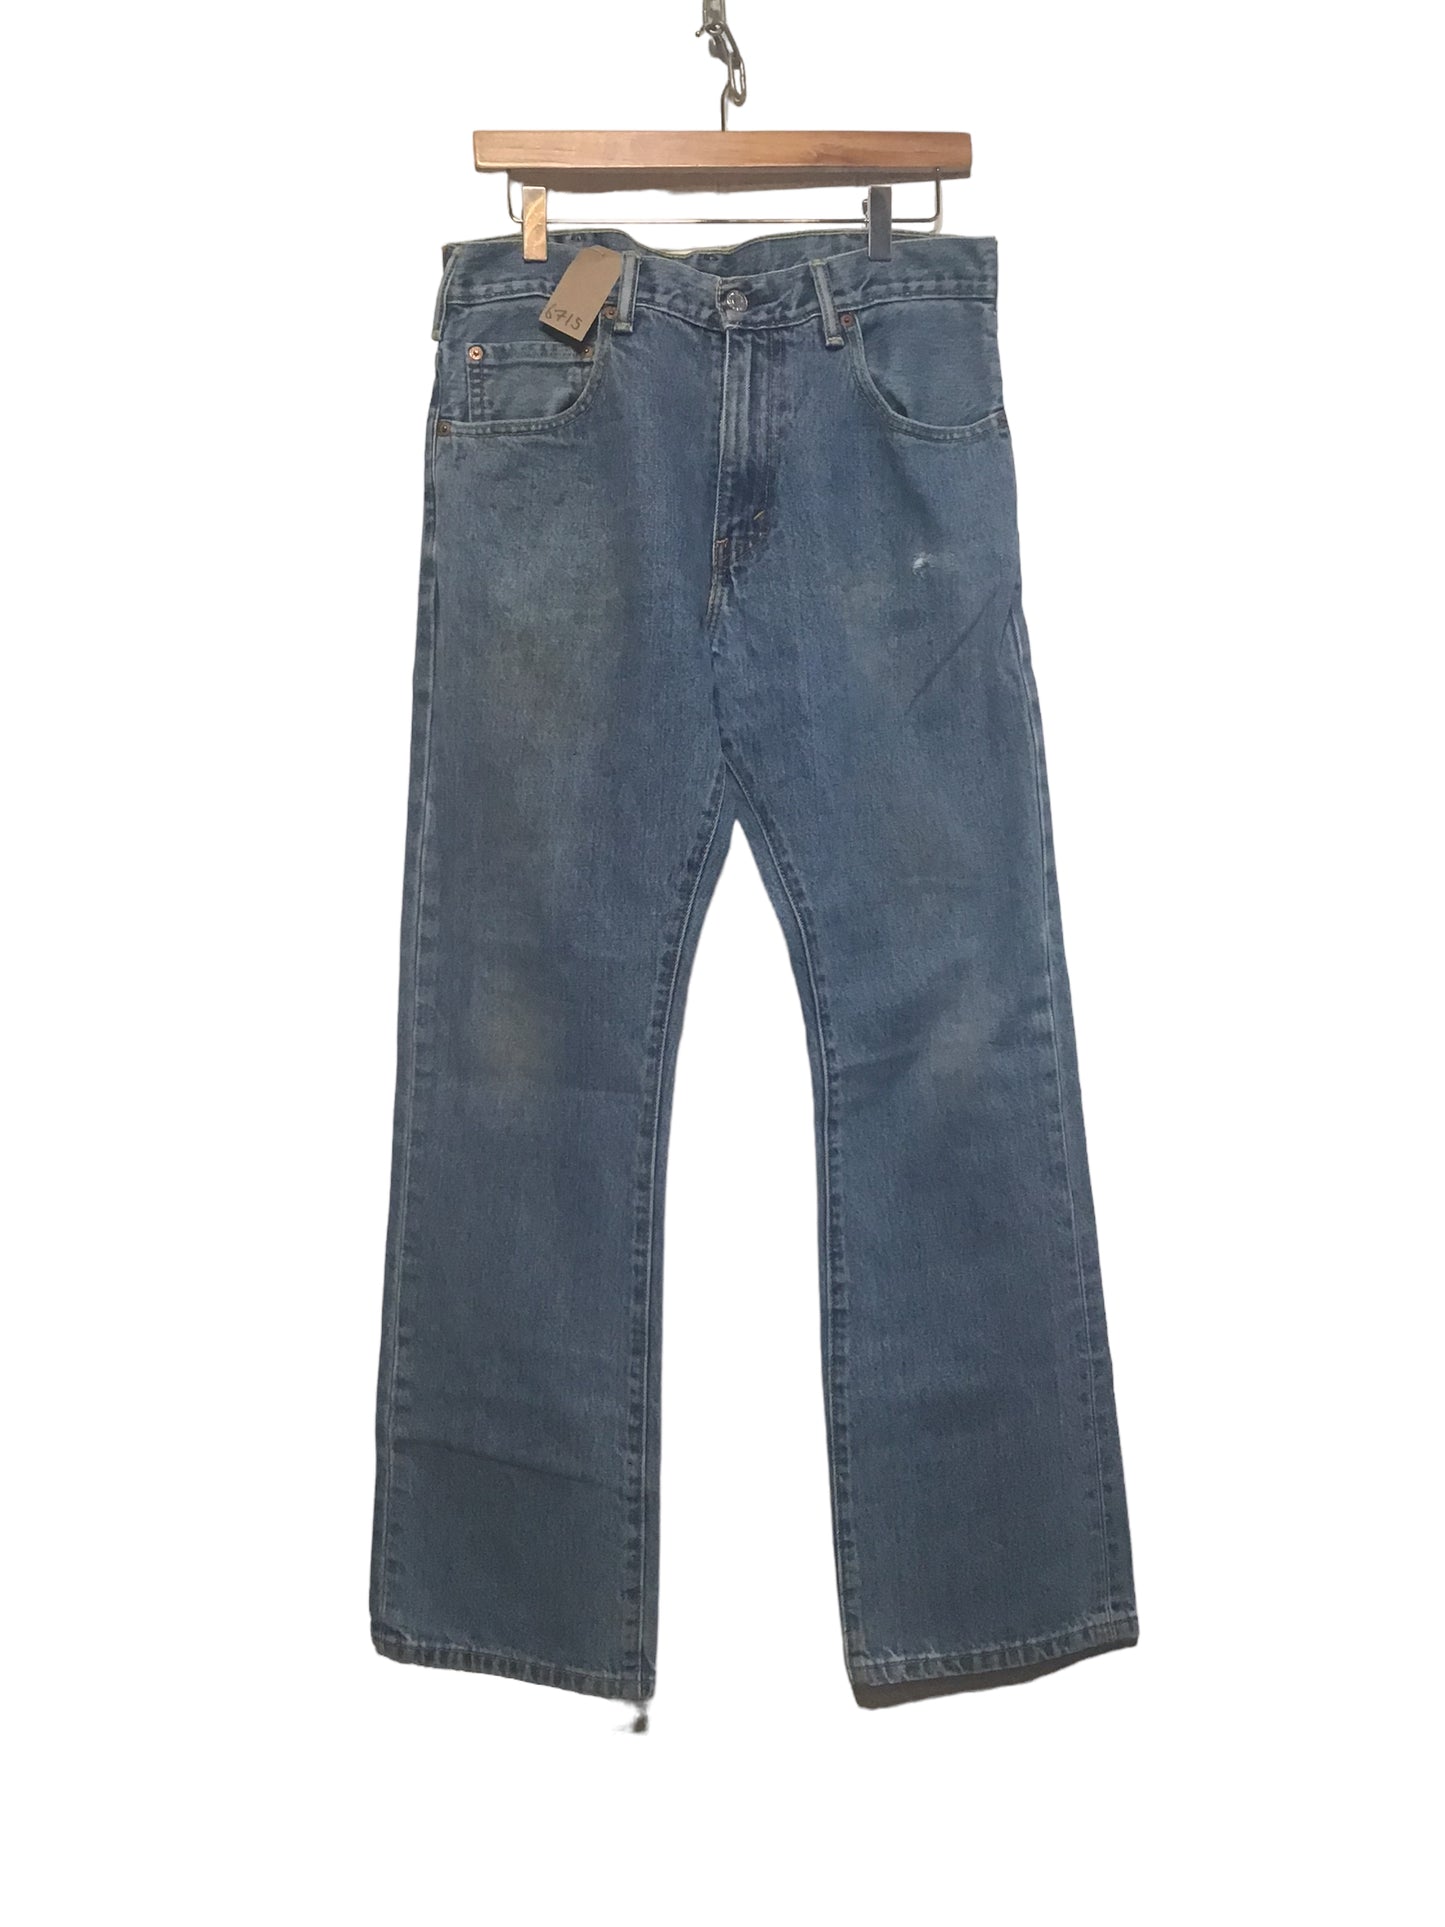 Levi 517 Jeans (32x30)